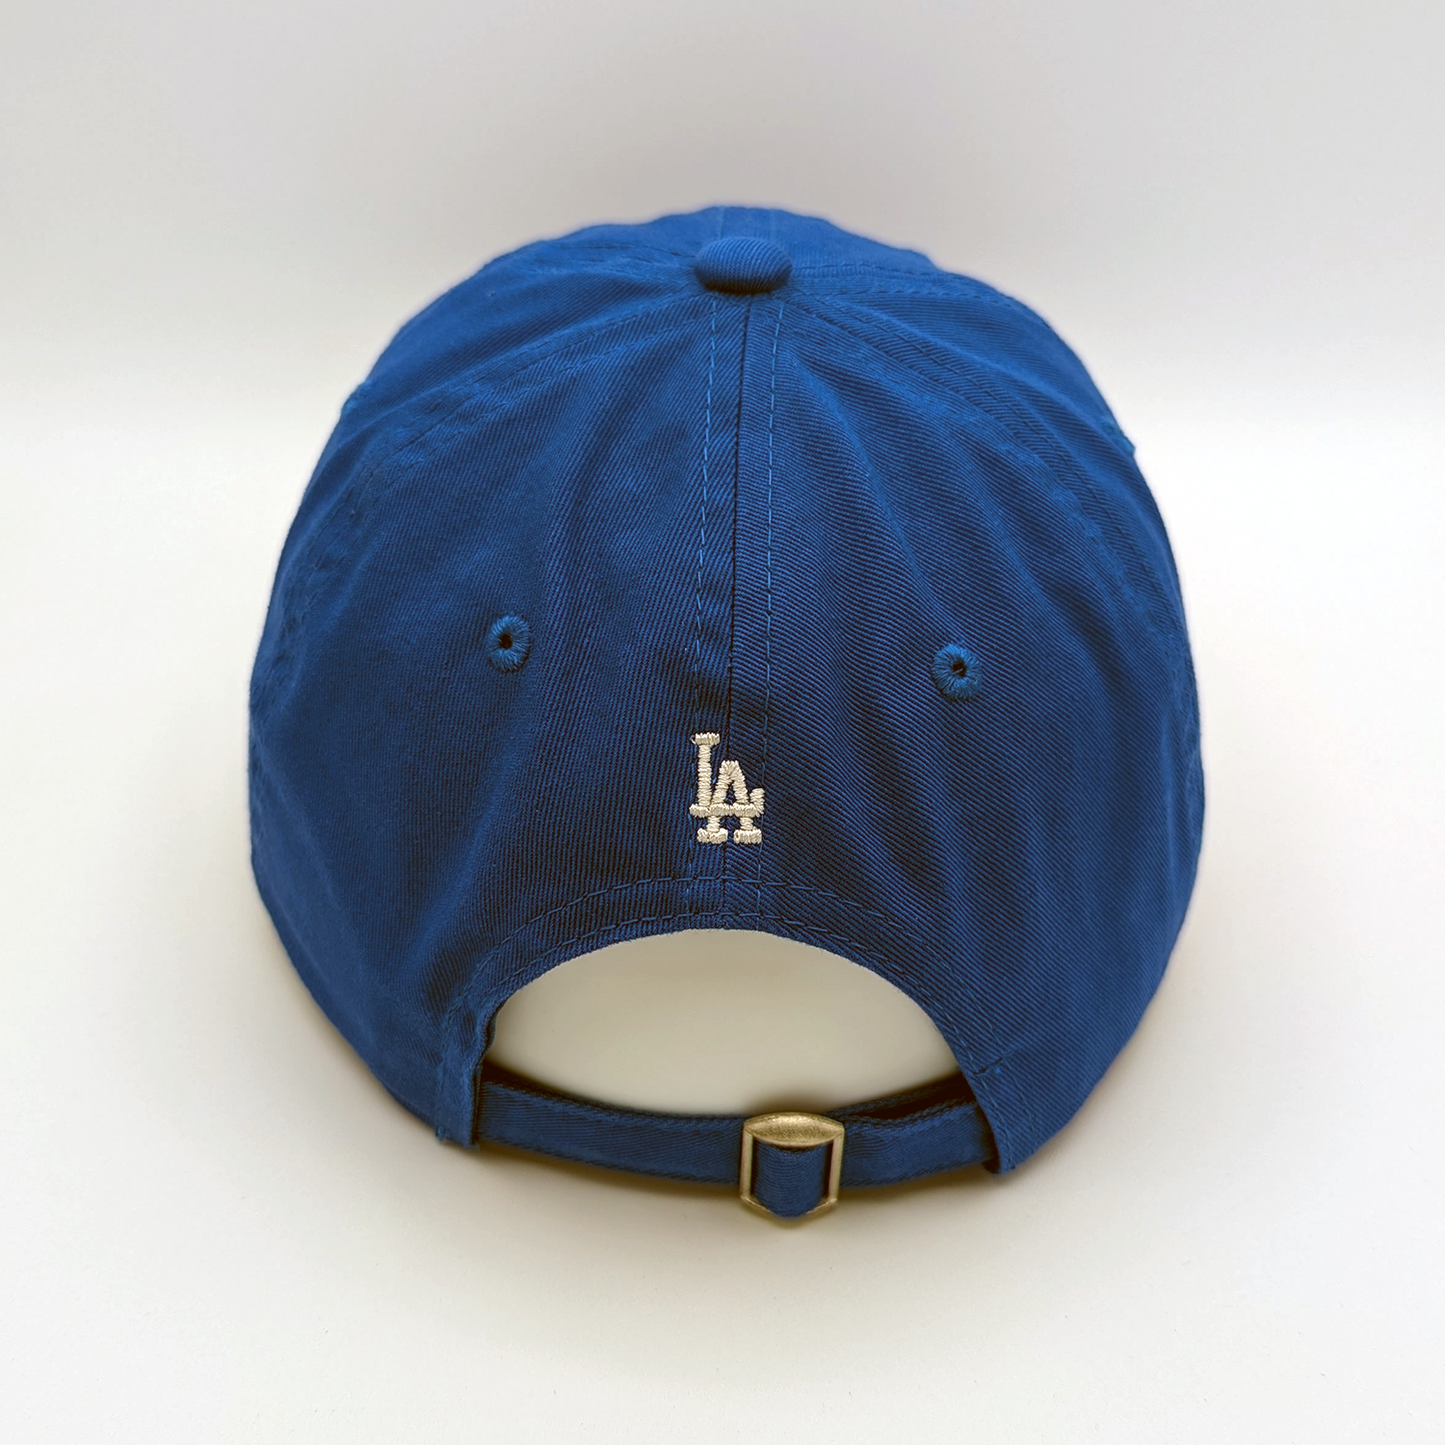 Korean Dodgers Dad Hat